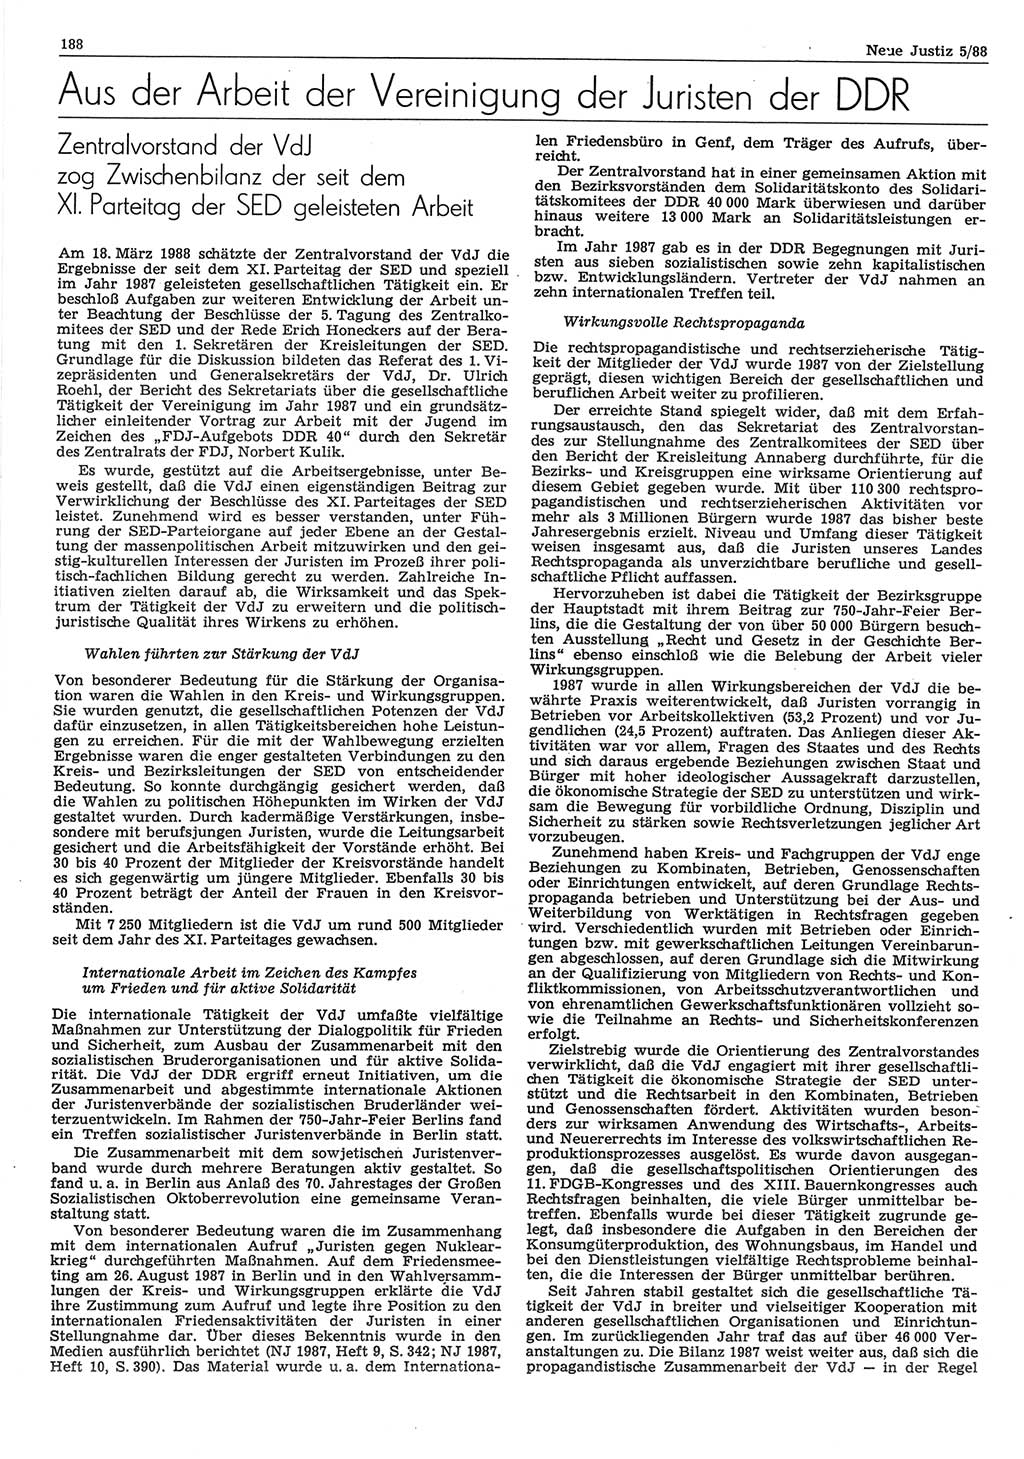 Neue Justiz (NJ), Zeitschrift für sozialistisches Recht und Gesetzlichkeit [Deutsche Demokratische Republik (DDR)], 42. Jahrgang 1988, Seite 188 (NJ DDR 1988, S. 188)